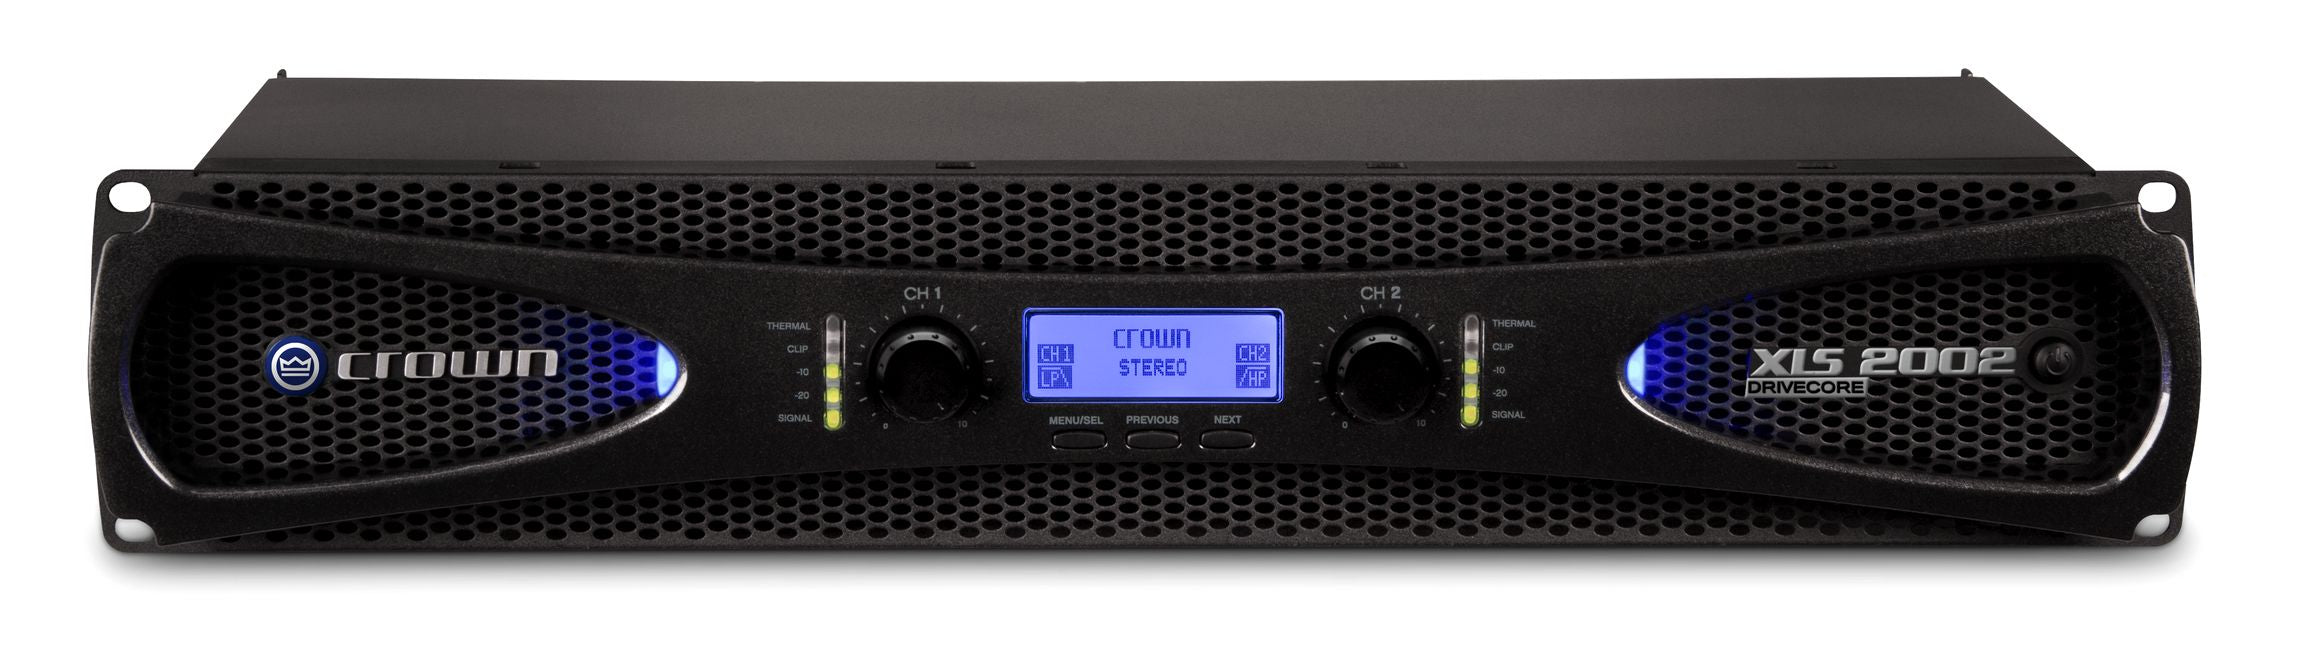 Crown Audio XLS2002 Drivecore - Power Amps - Professional Audio Design, Inc